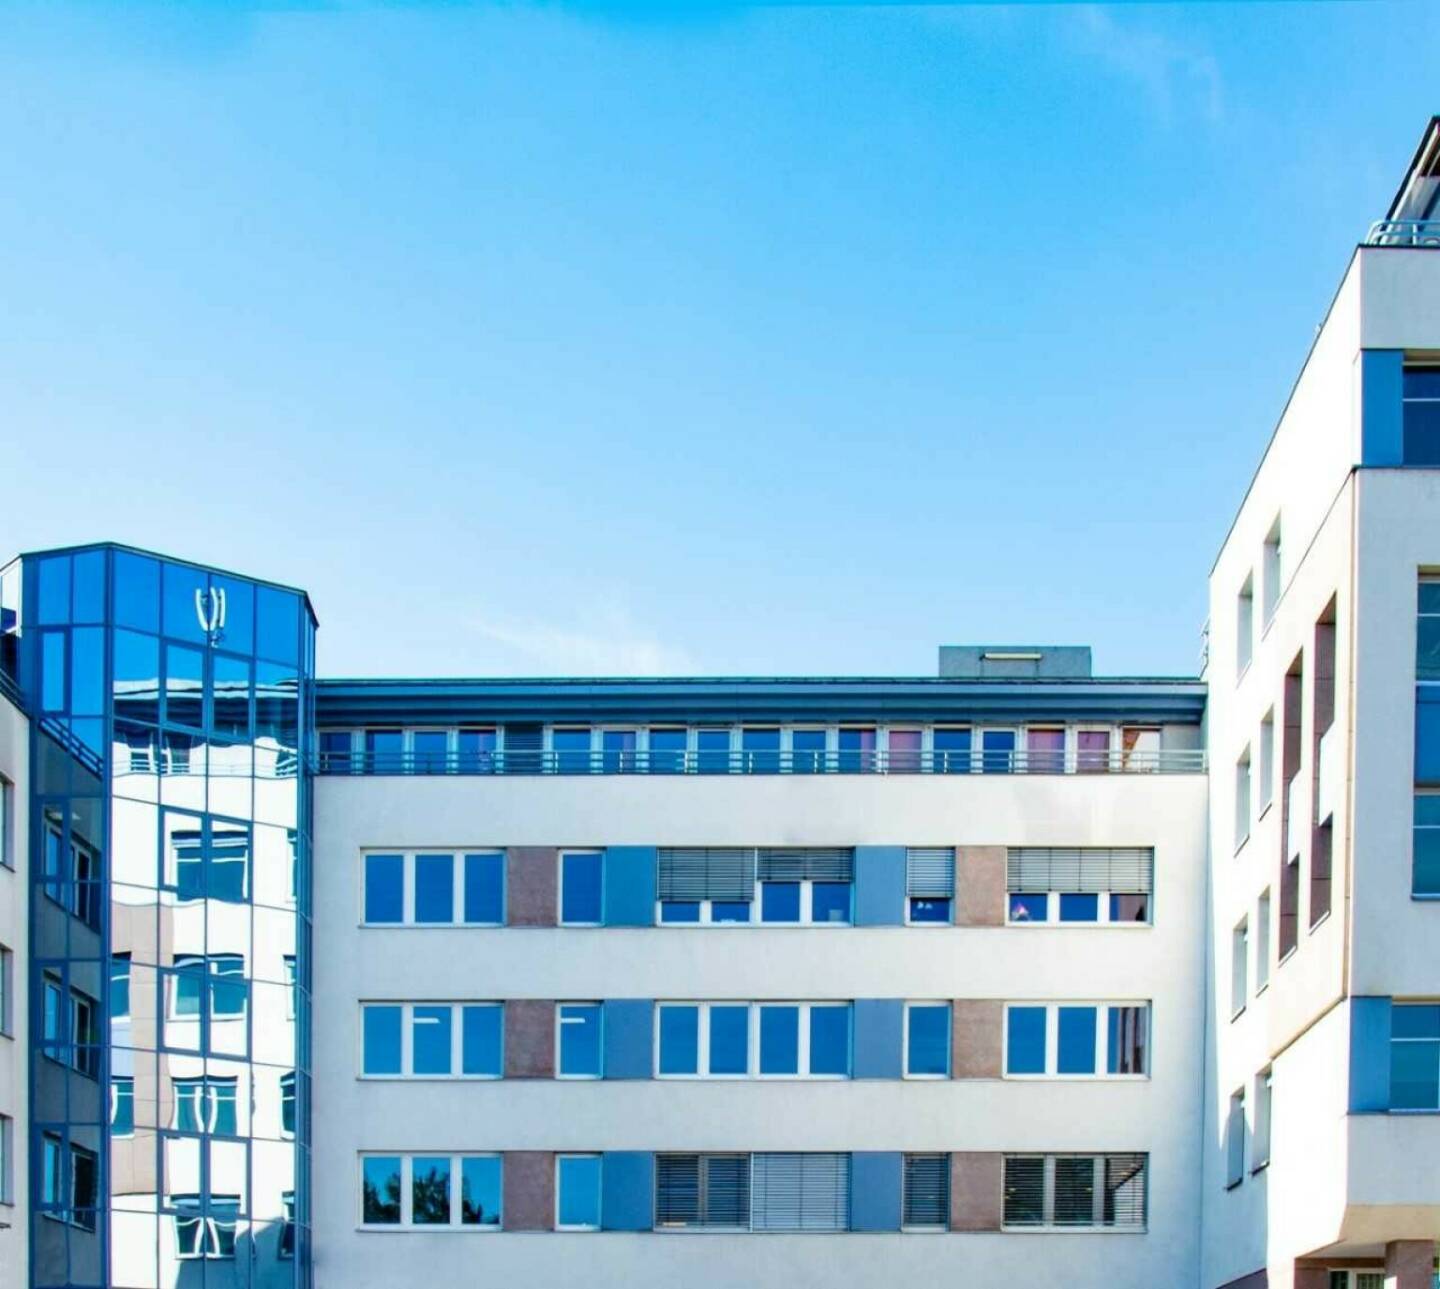 Otto Immobilien GmbH: Apleona Invest verkauft Büroimmobilie in Mödling – OTTO Immobilien als Vermittler, Fotocredit: OTTO Immobilien